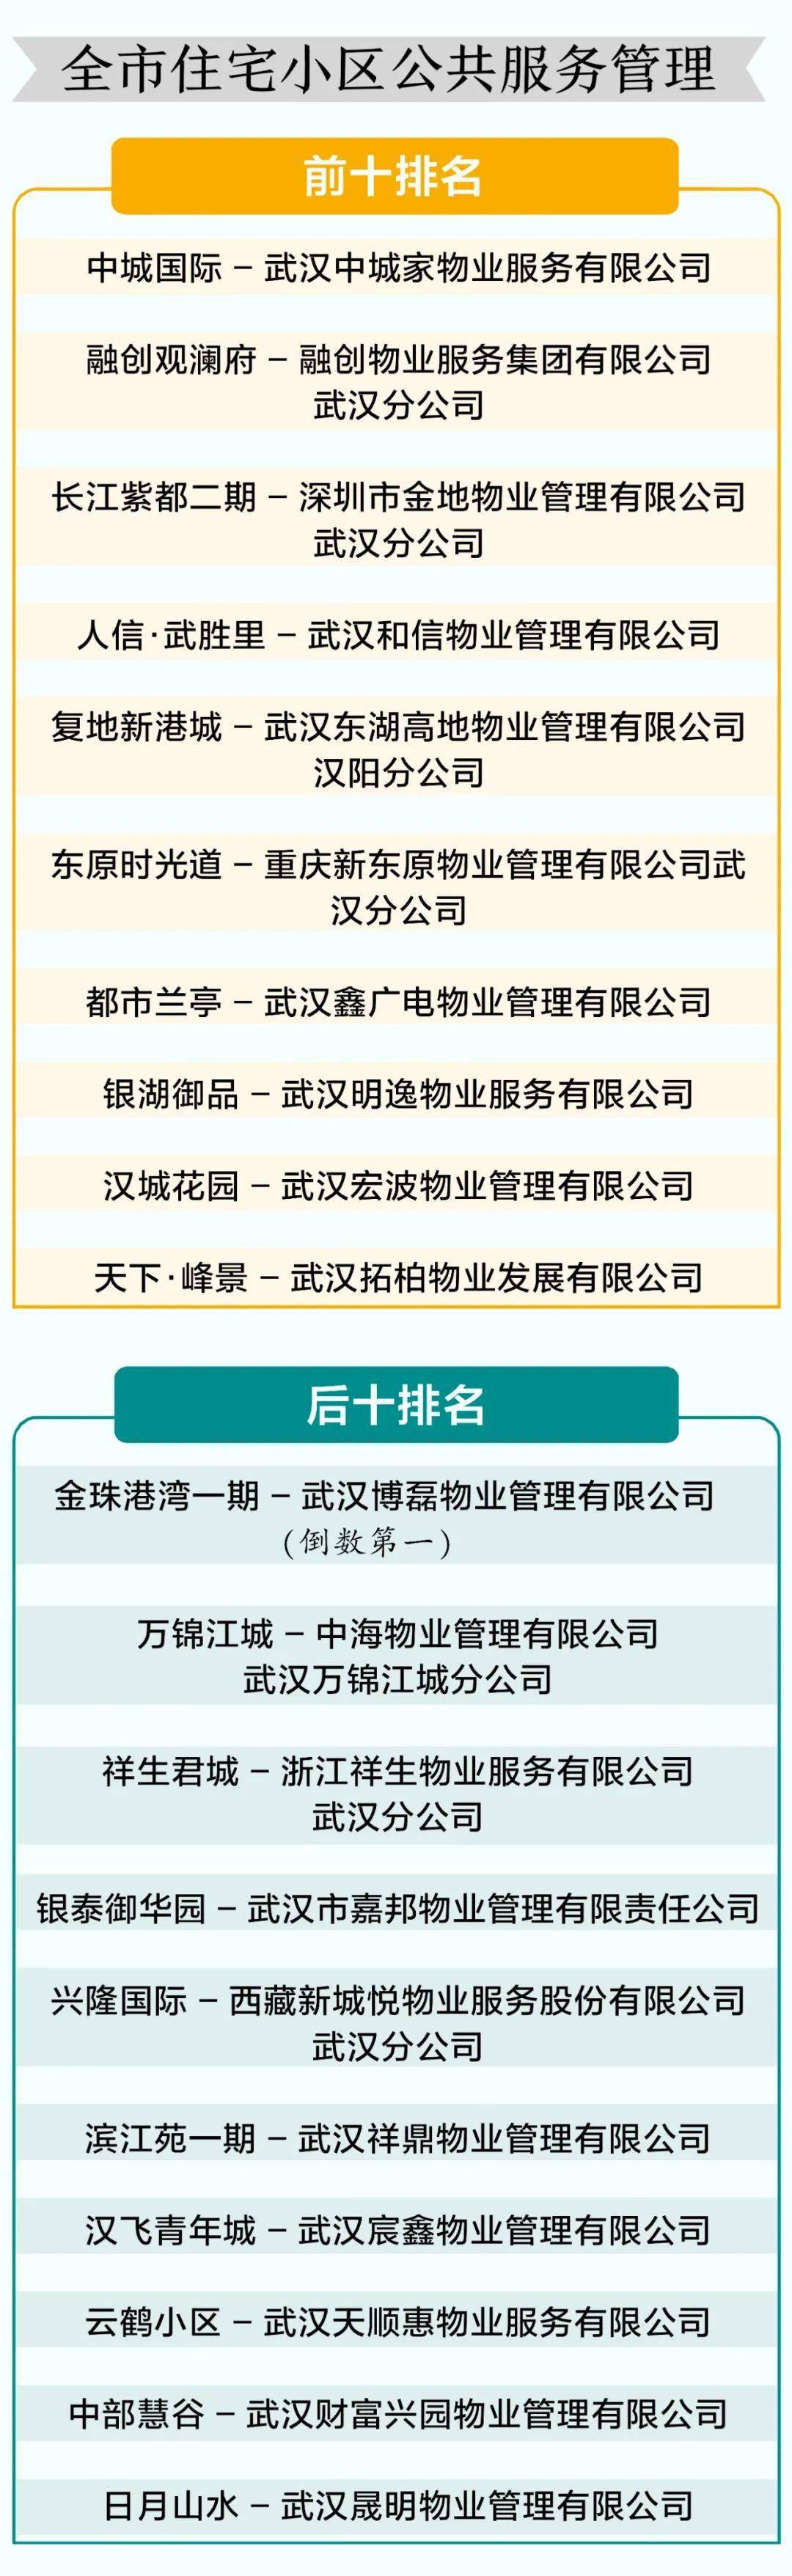 武汉医院排行_湖北十大医院排名:武汉一城占7个名额,荆州和荆门皆无一上榜